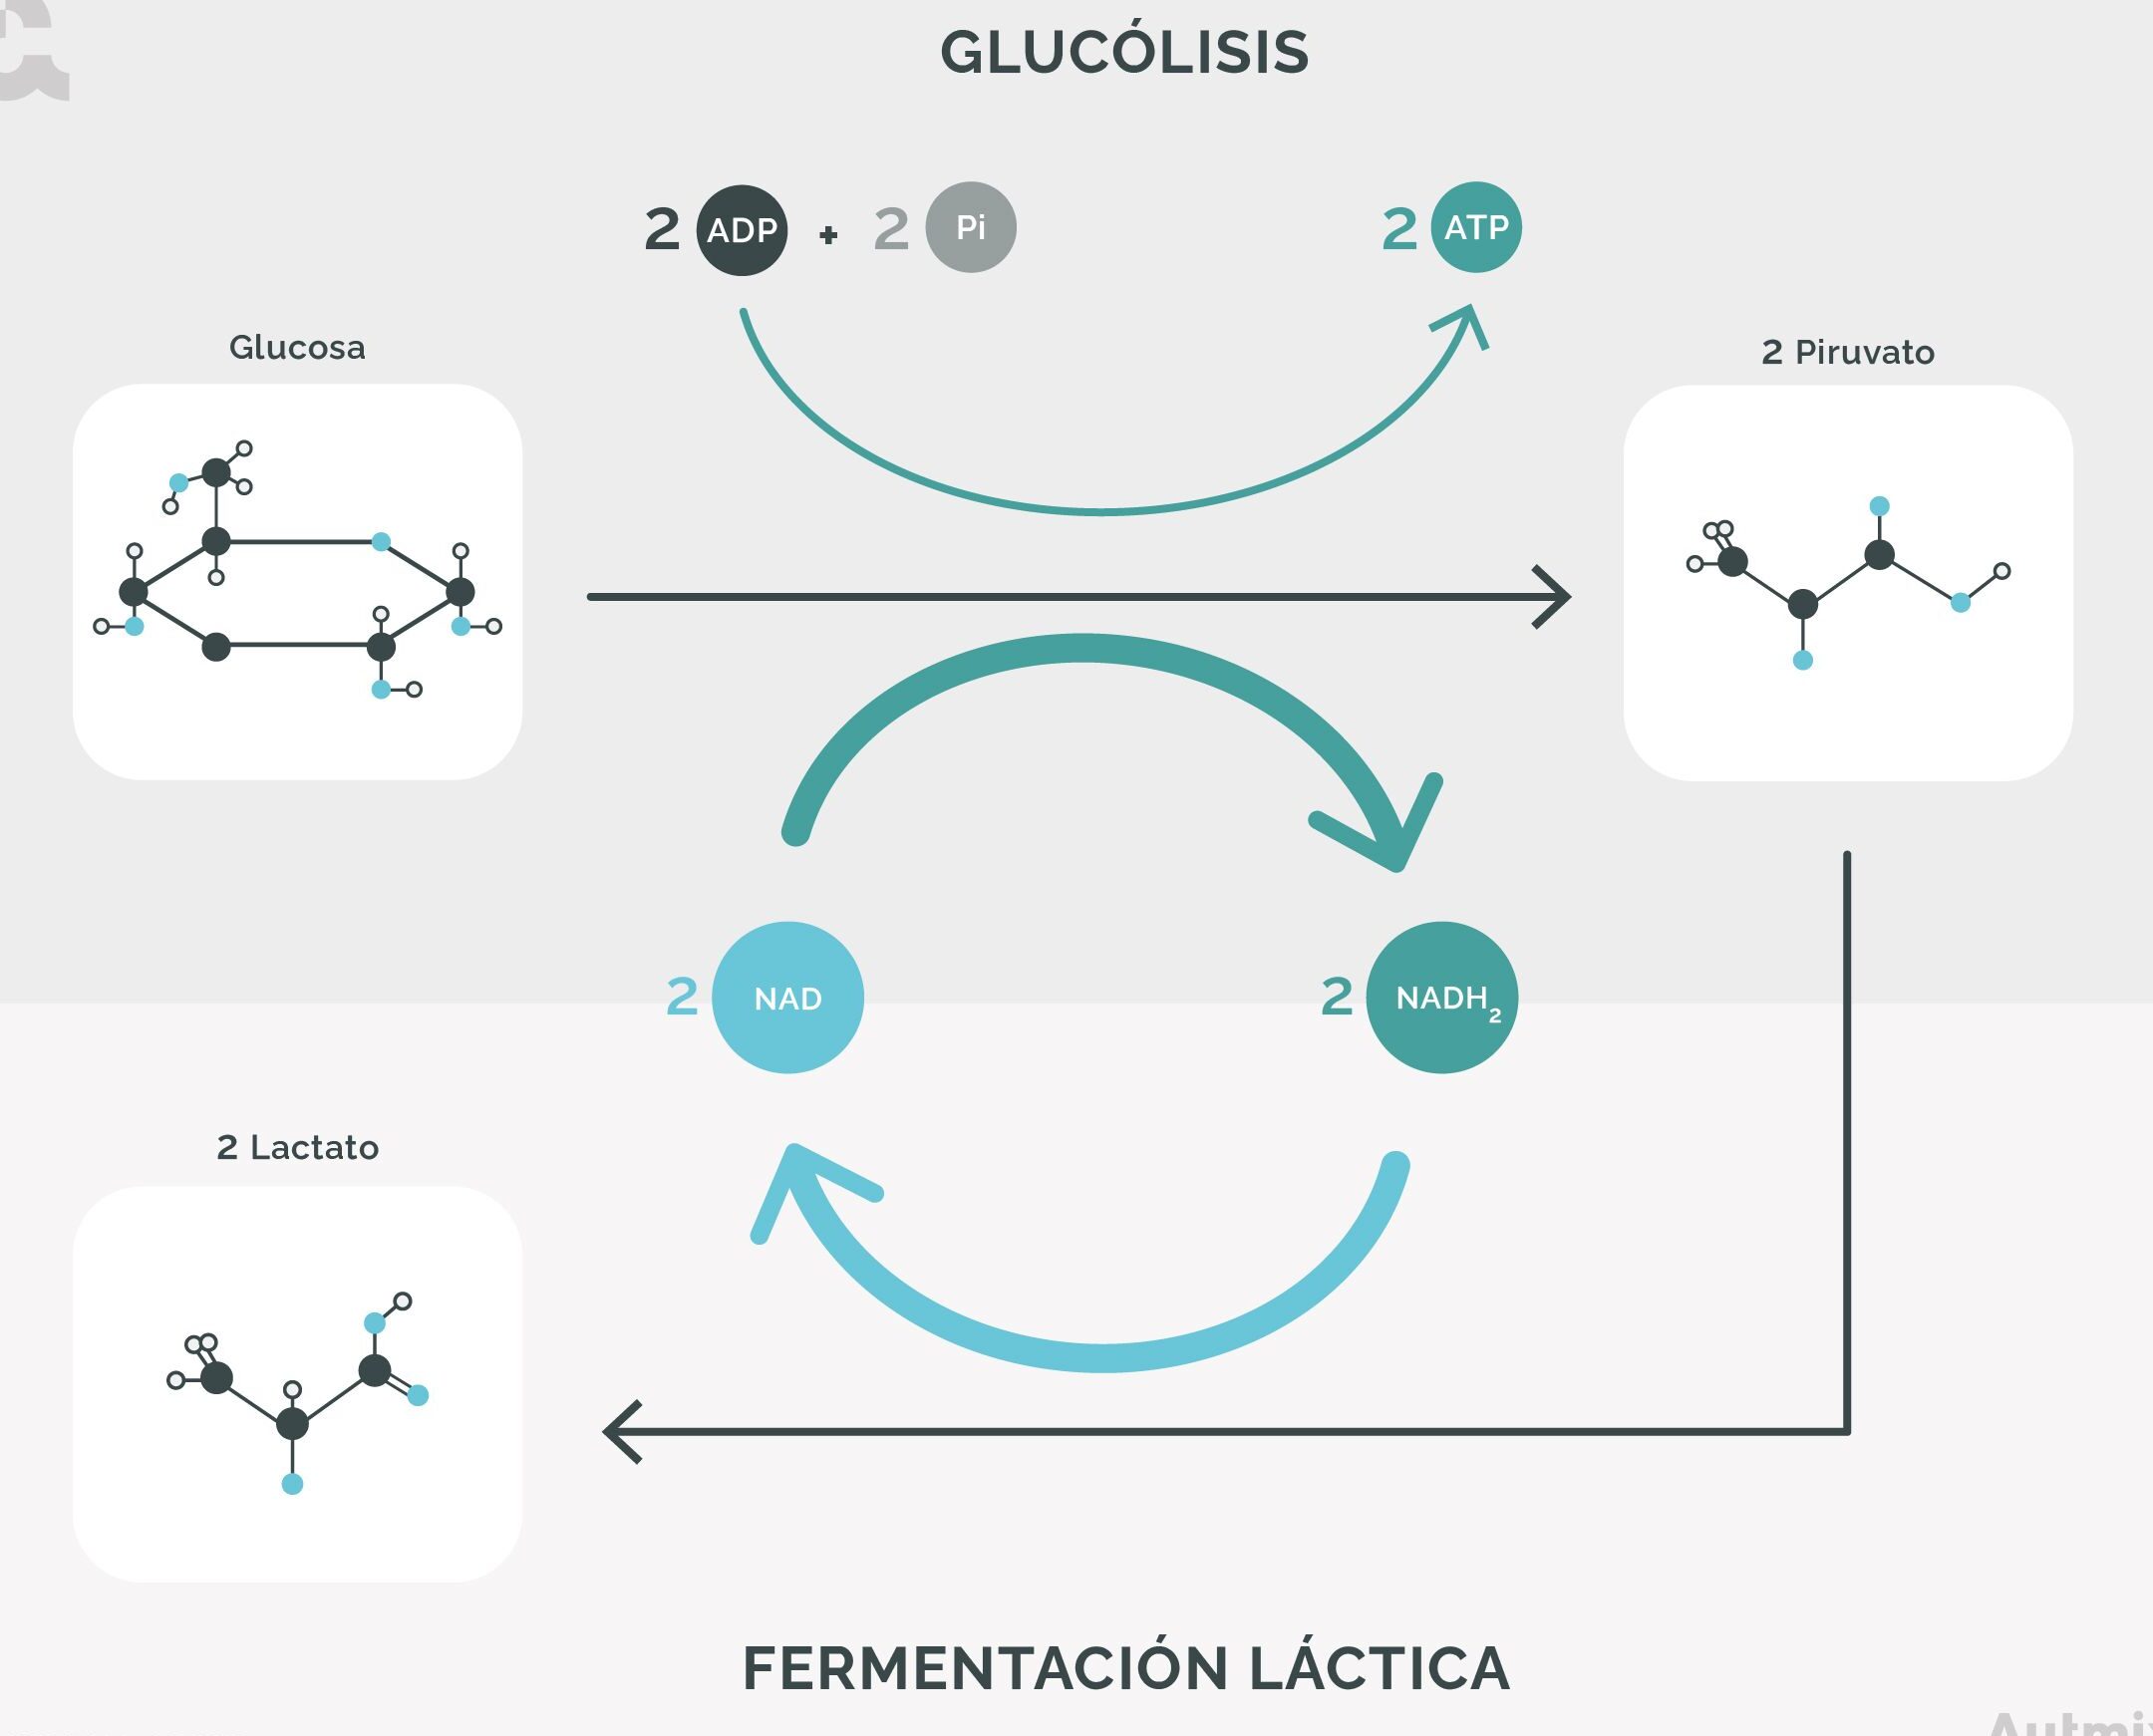 Bacterias fermentadoras de lactosa y no lactosa: diferencias y aplicaciones en la industria alimentaria.